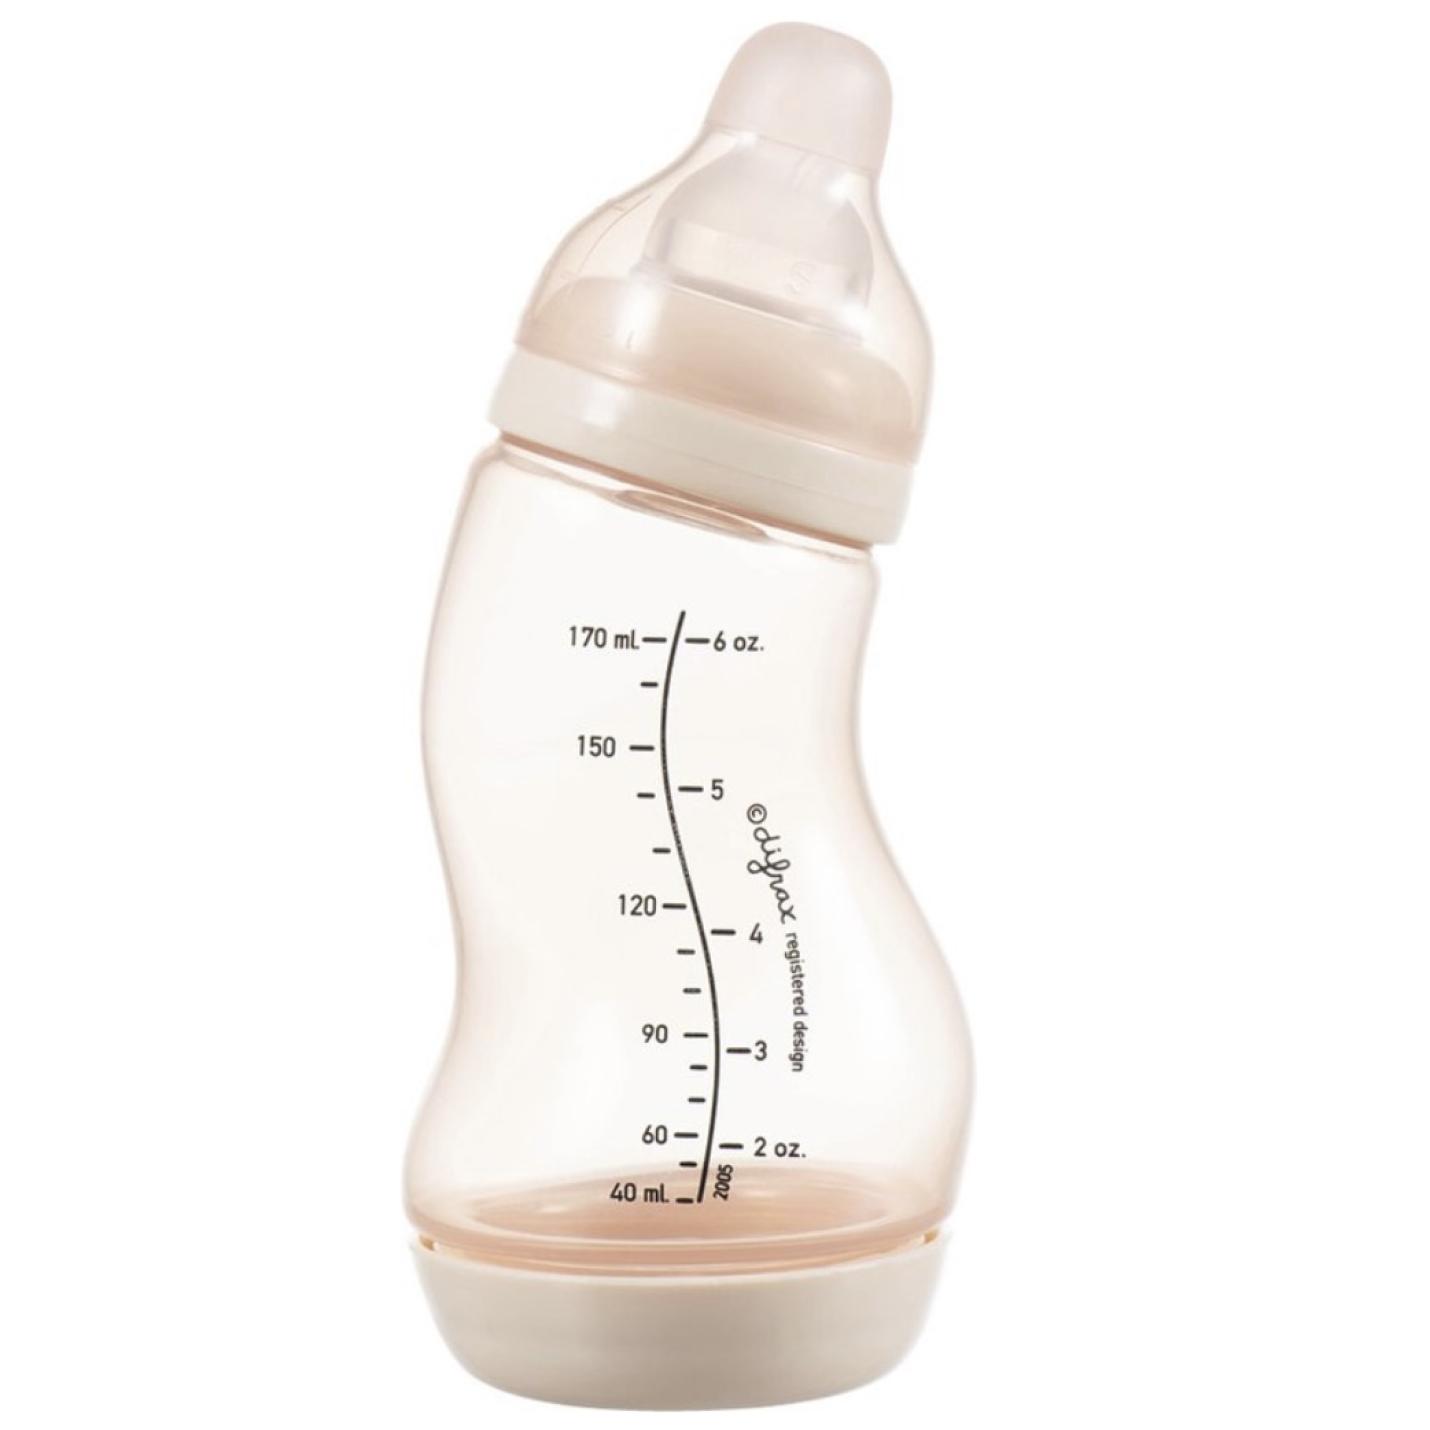 S-Fles Roze baby fles roze in s vorm met maatverdeling op fles en speen transparant erop schroefdop onderin